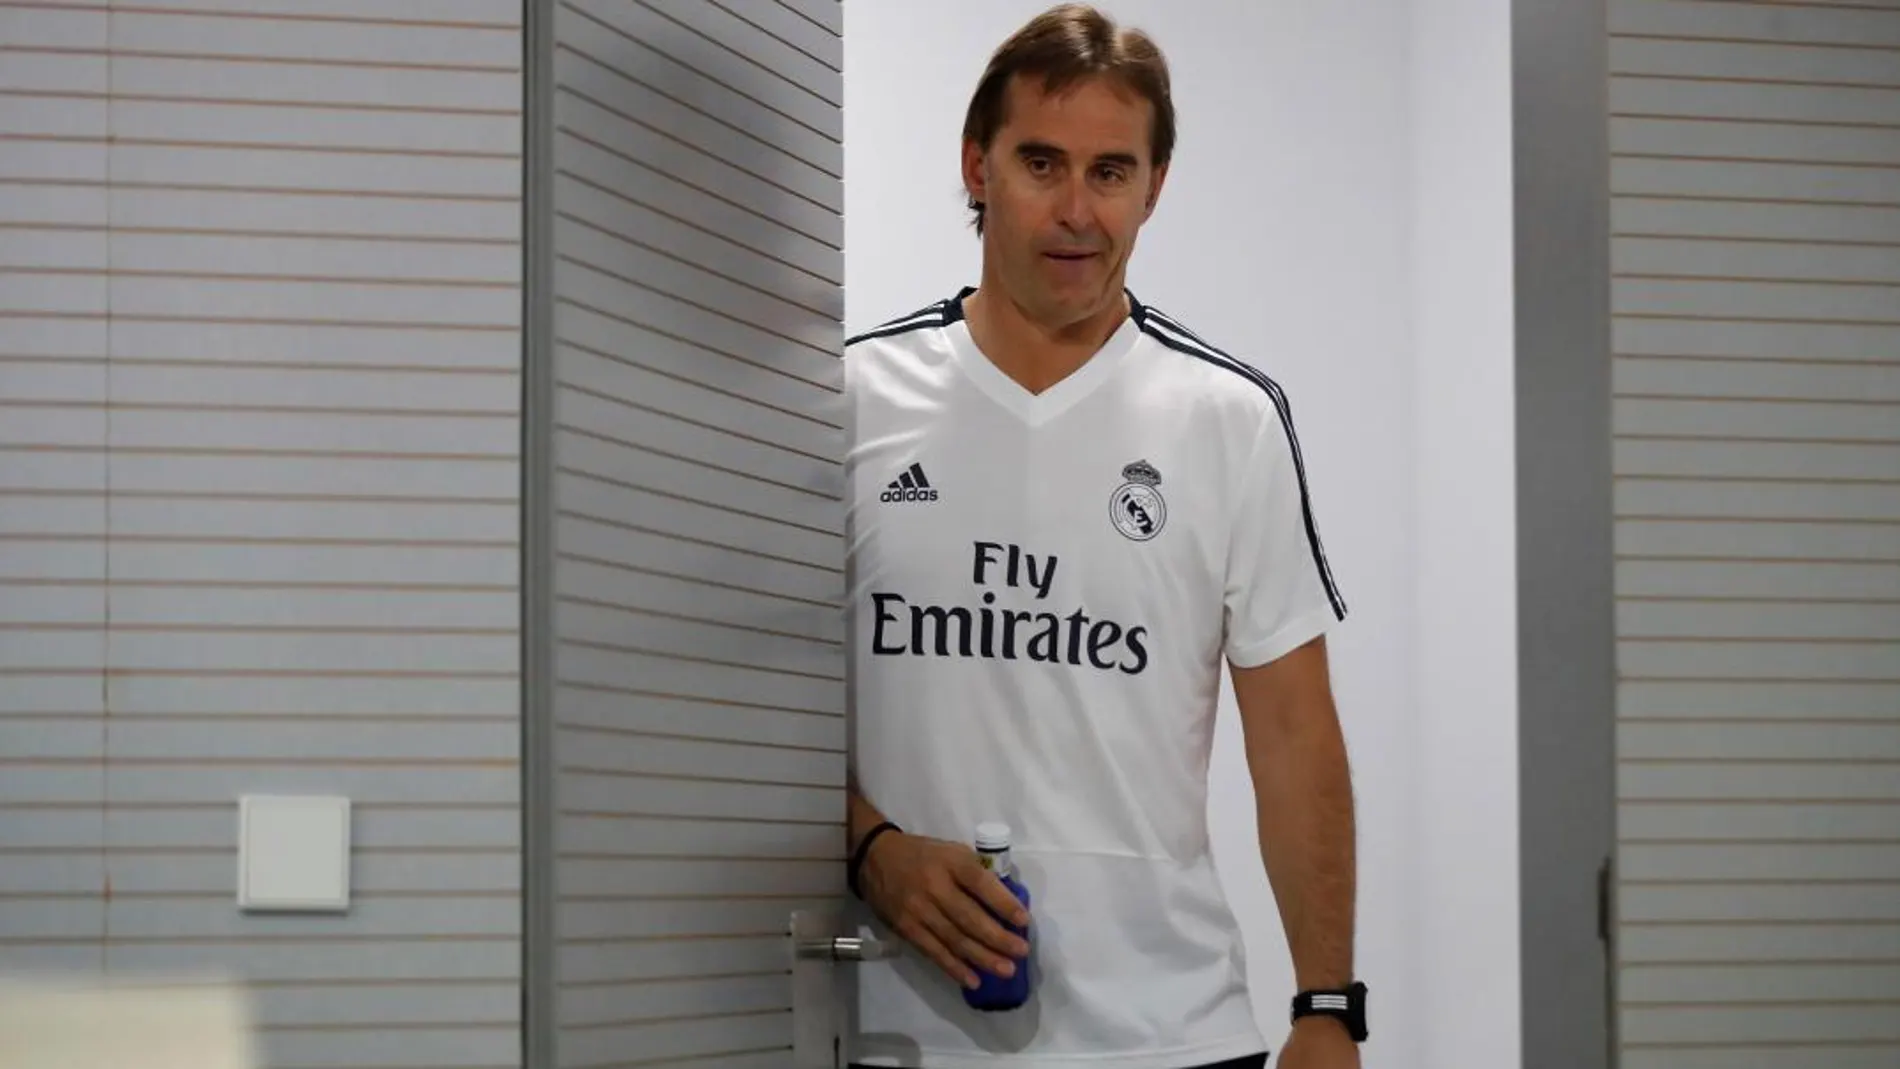 El entrenador del Real Madrid, Julen Lopetegui, poco antes de la rueda de prensa que ofreció hoy en Valdebebas tras el entrenamiento del equipo. / Foto: Efe/Juan Carlos Hidalgo